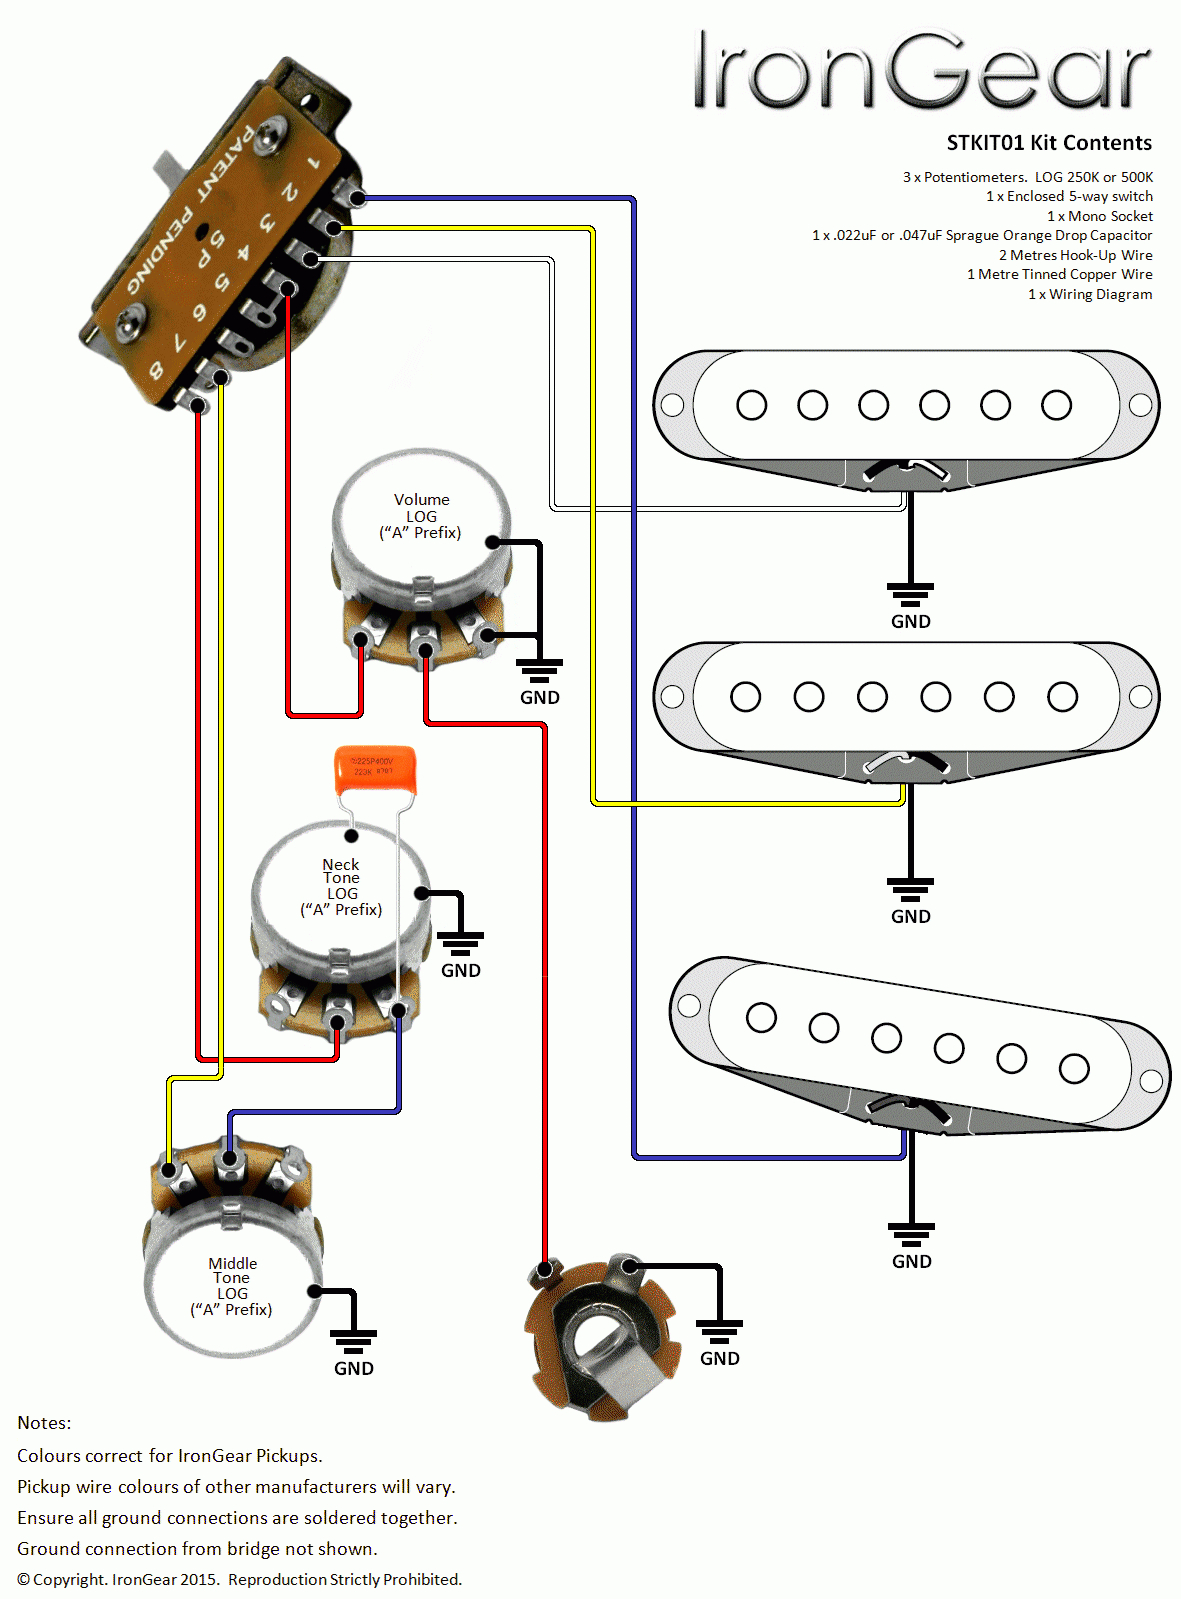 Leer Truck Cap Wiring Diagram | Wiring Diagram - Are Truck Cap Wiring Diagram